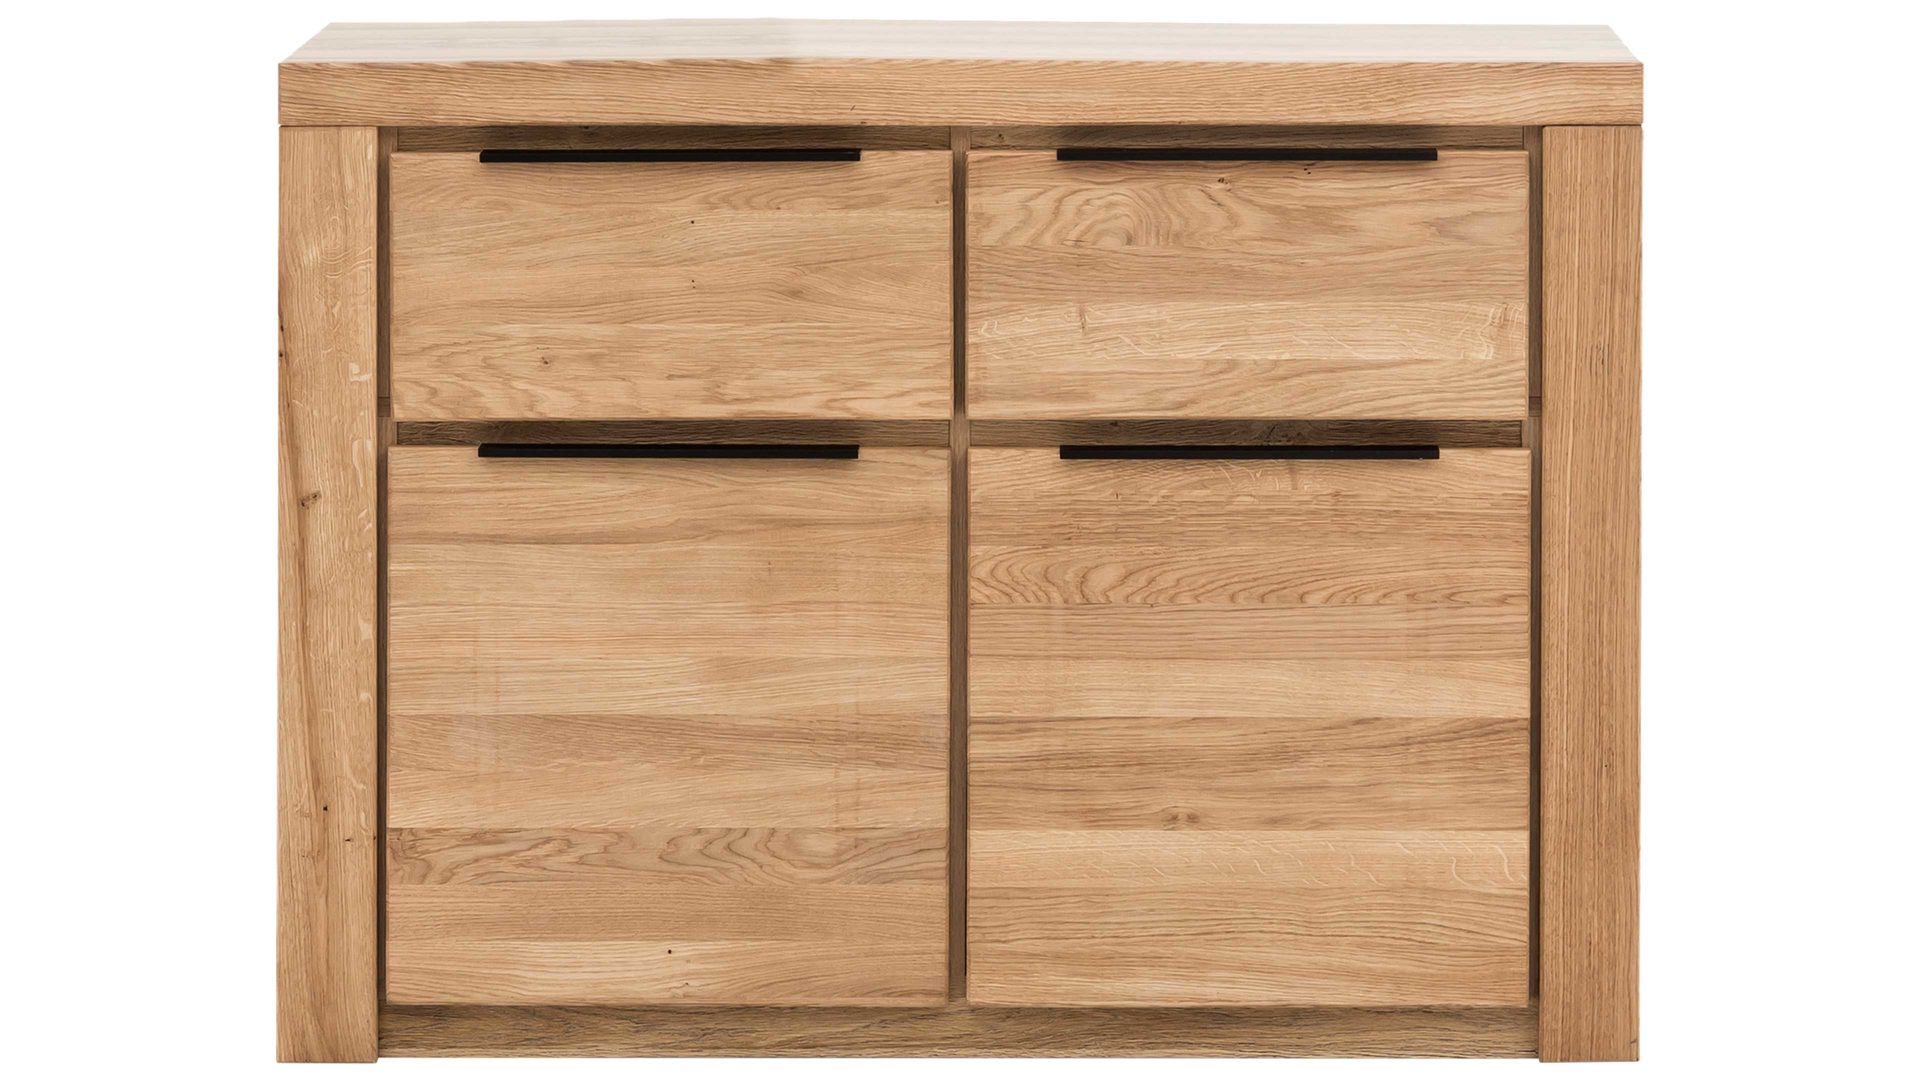 Kombikommode Elfo-möbel aus Holz in Holzfarben Möbelserie Greta - Kombikommode Eiche - zwei Türen, zwei Schubladen, Länge ca. 108 cm